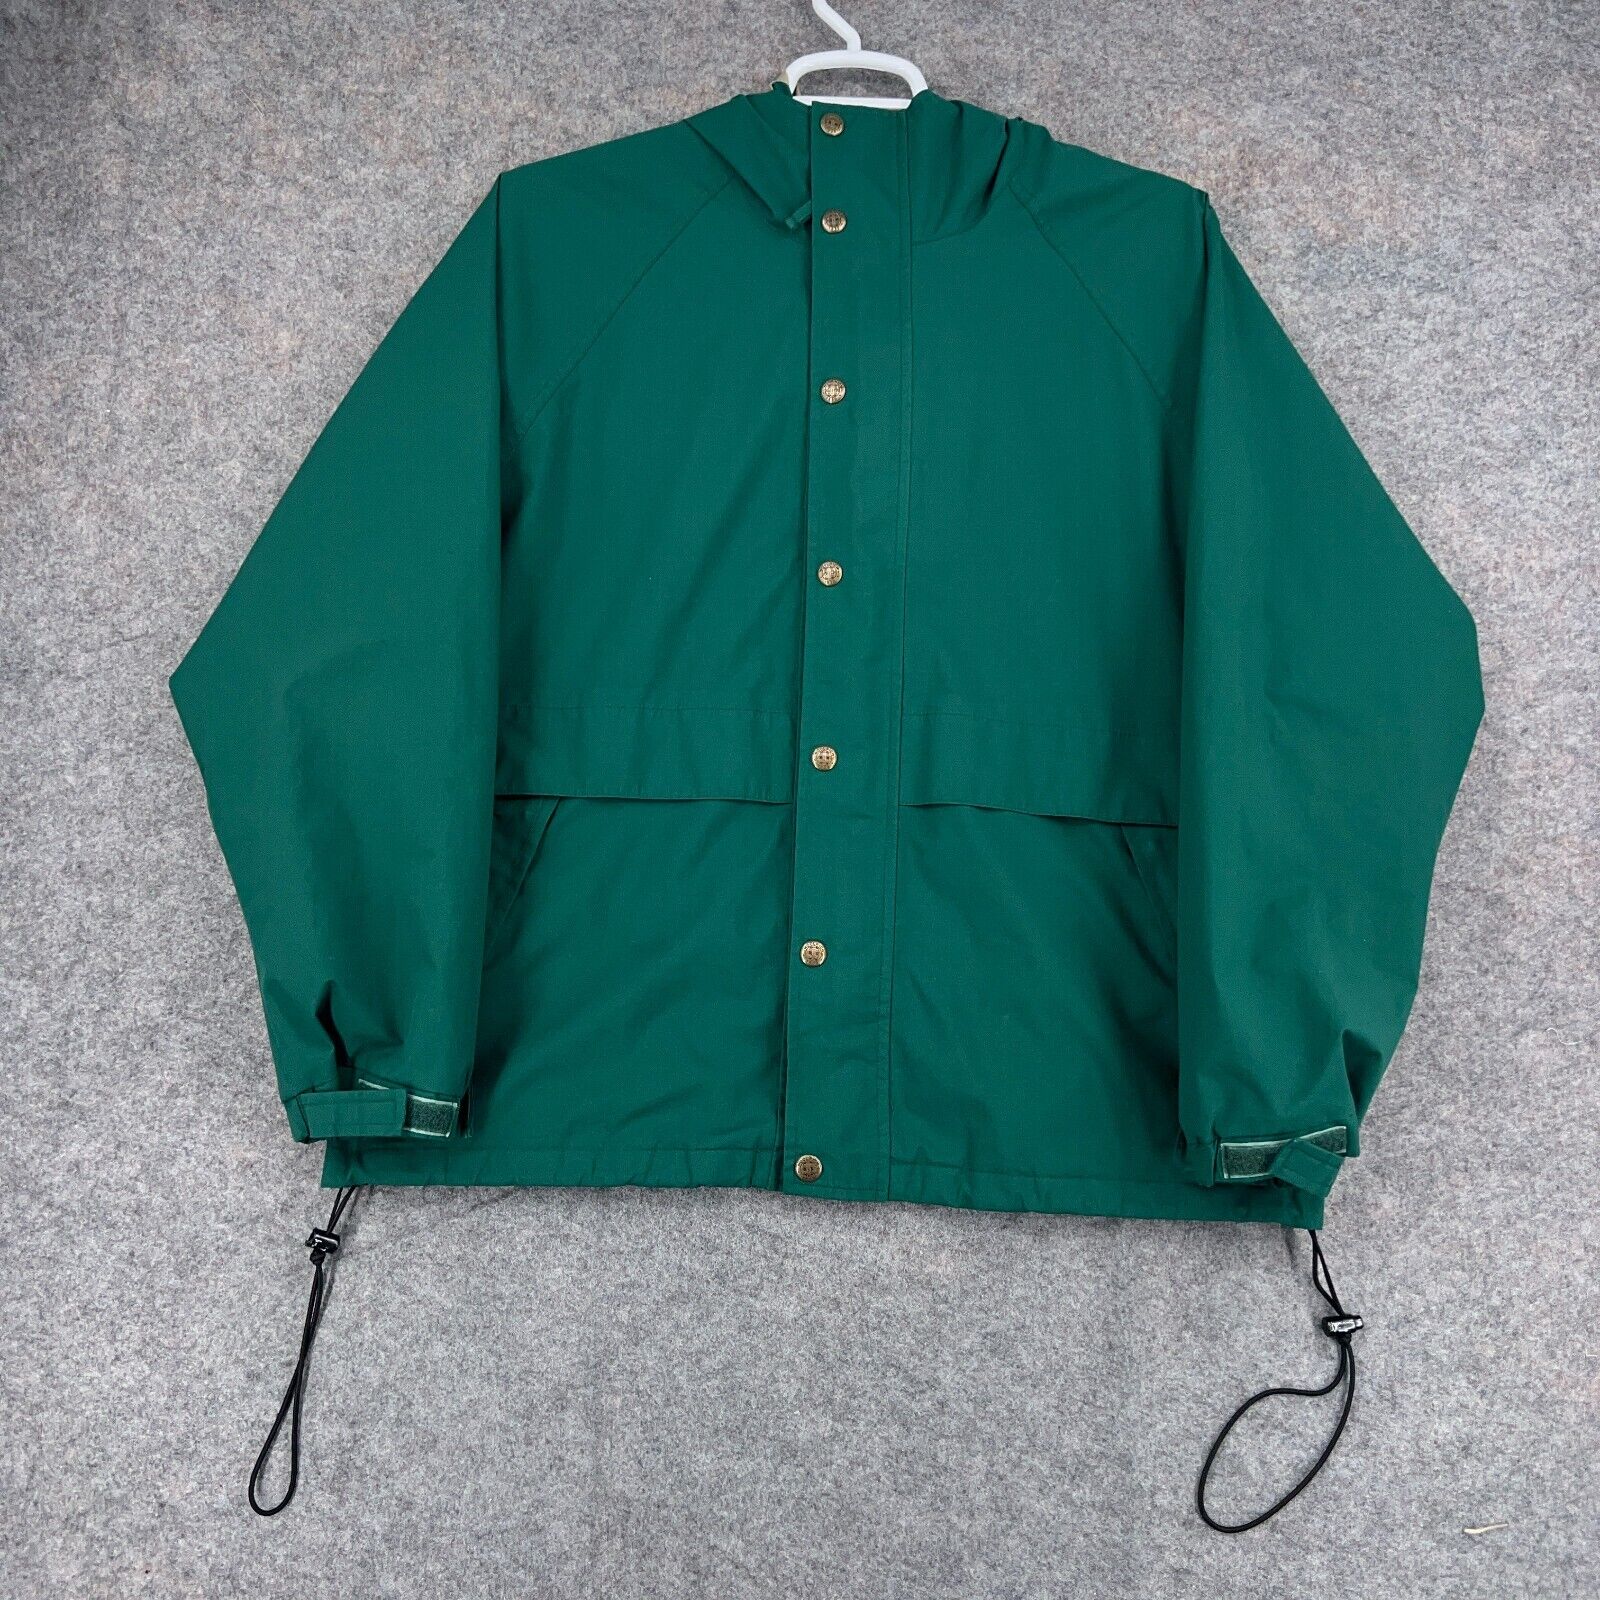 Vintage Woolrich Rain Jacket Mens Large Green Zip Up Hooded Gortex Waterproof